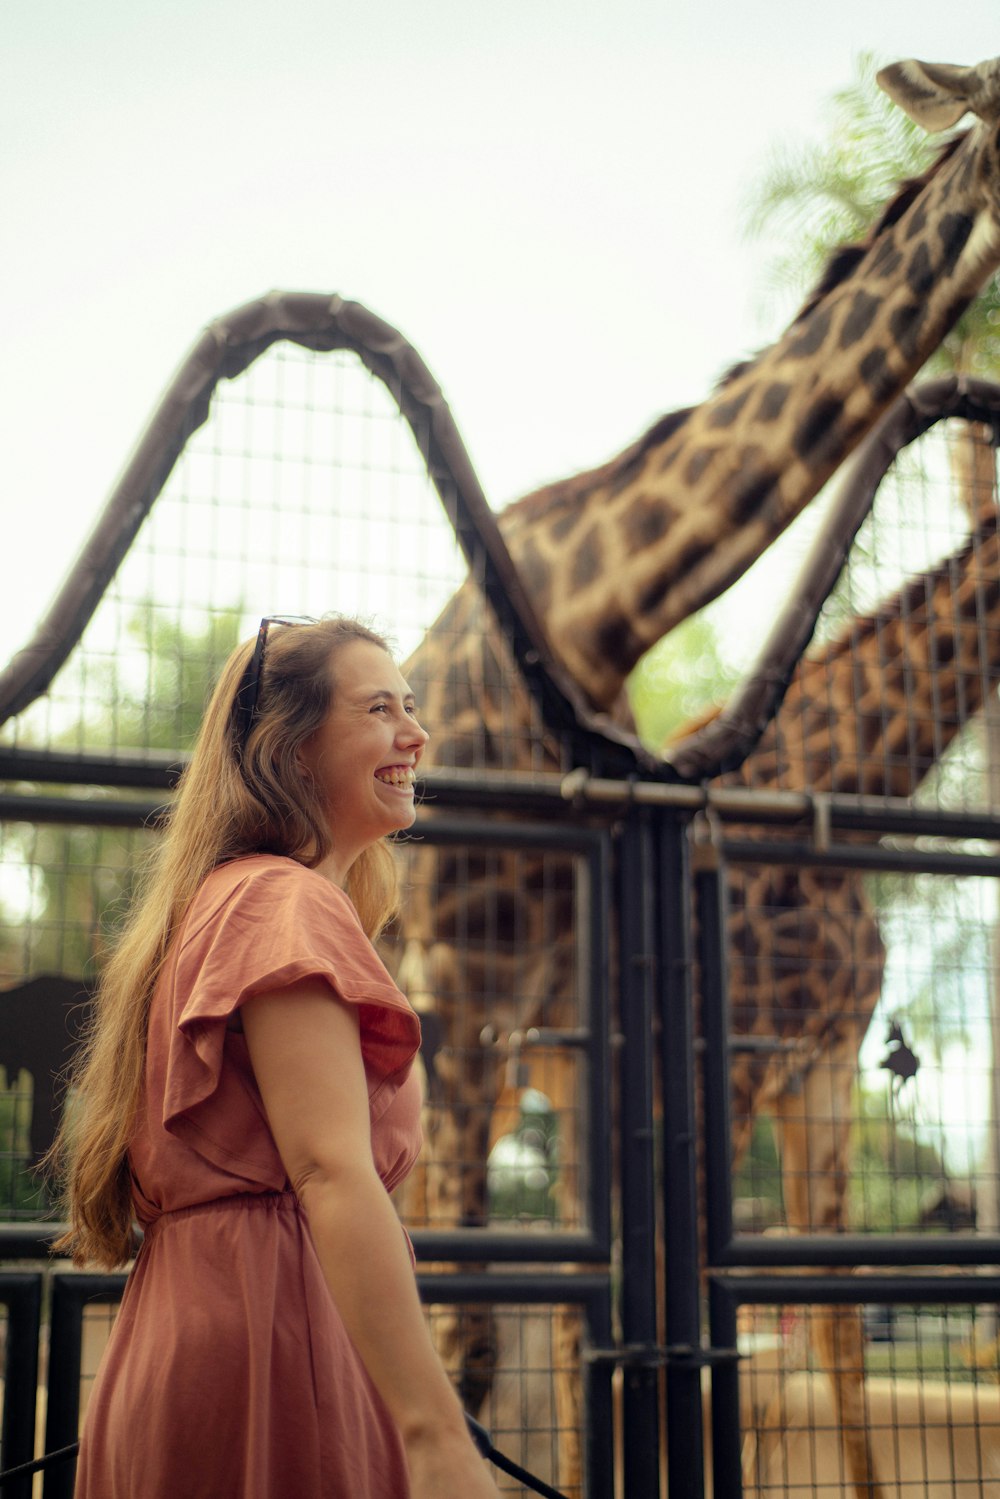 Eine Frau lächelt eine Giraffe hinter einem Zaun an